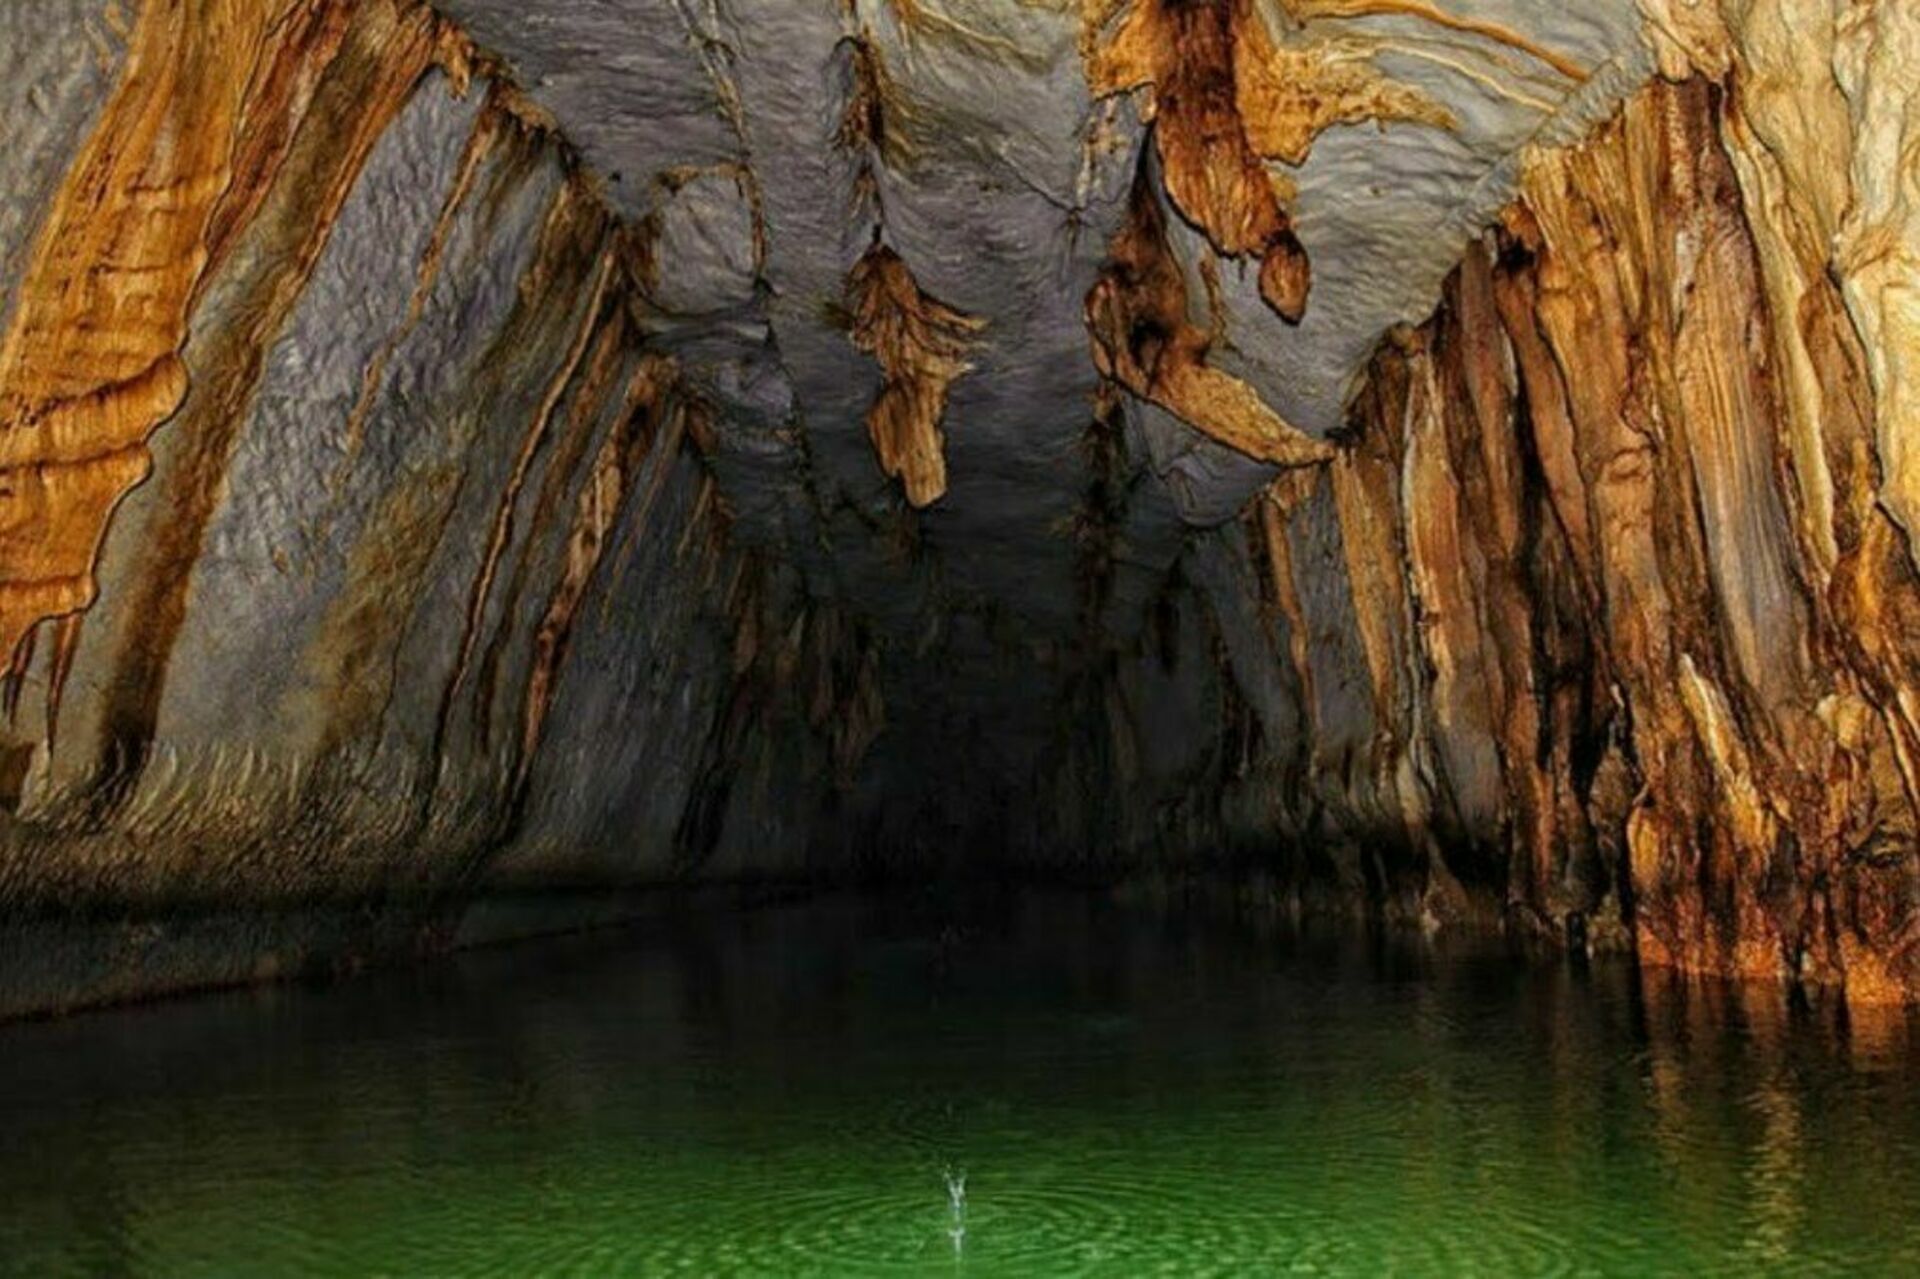 Вода в подземных реках и озерах. Подземная река Пуэрто-принцесса на Филиппинах. Подземная река Пуэрто-Принсеса. Подземная река Пуэрто-Принсеса (Puerto Princesa). Подземная река Пуэрто-Принсеса ЮНЕСКО.